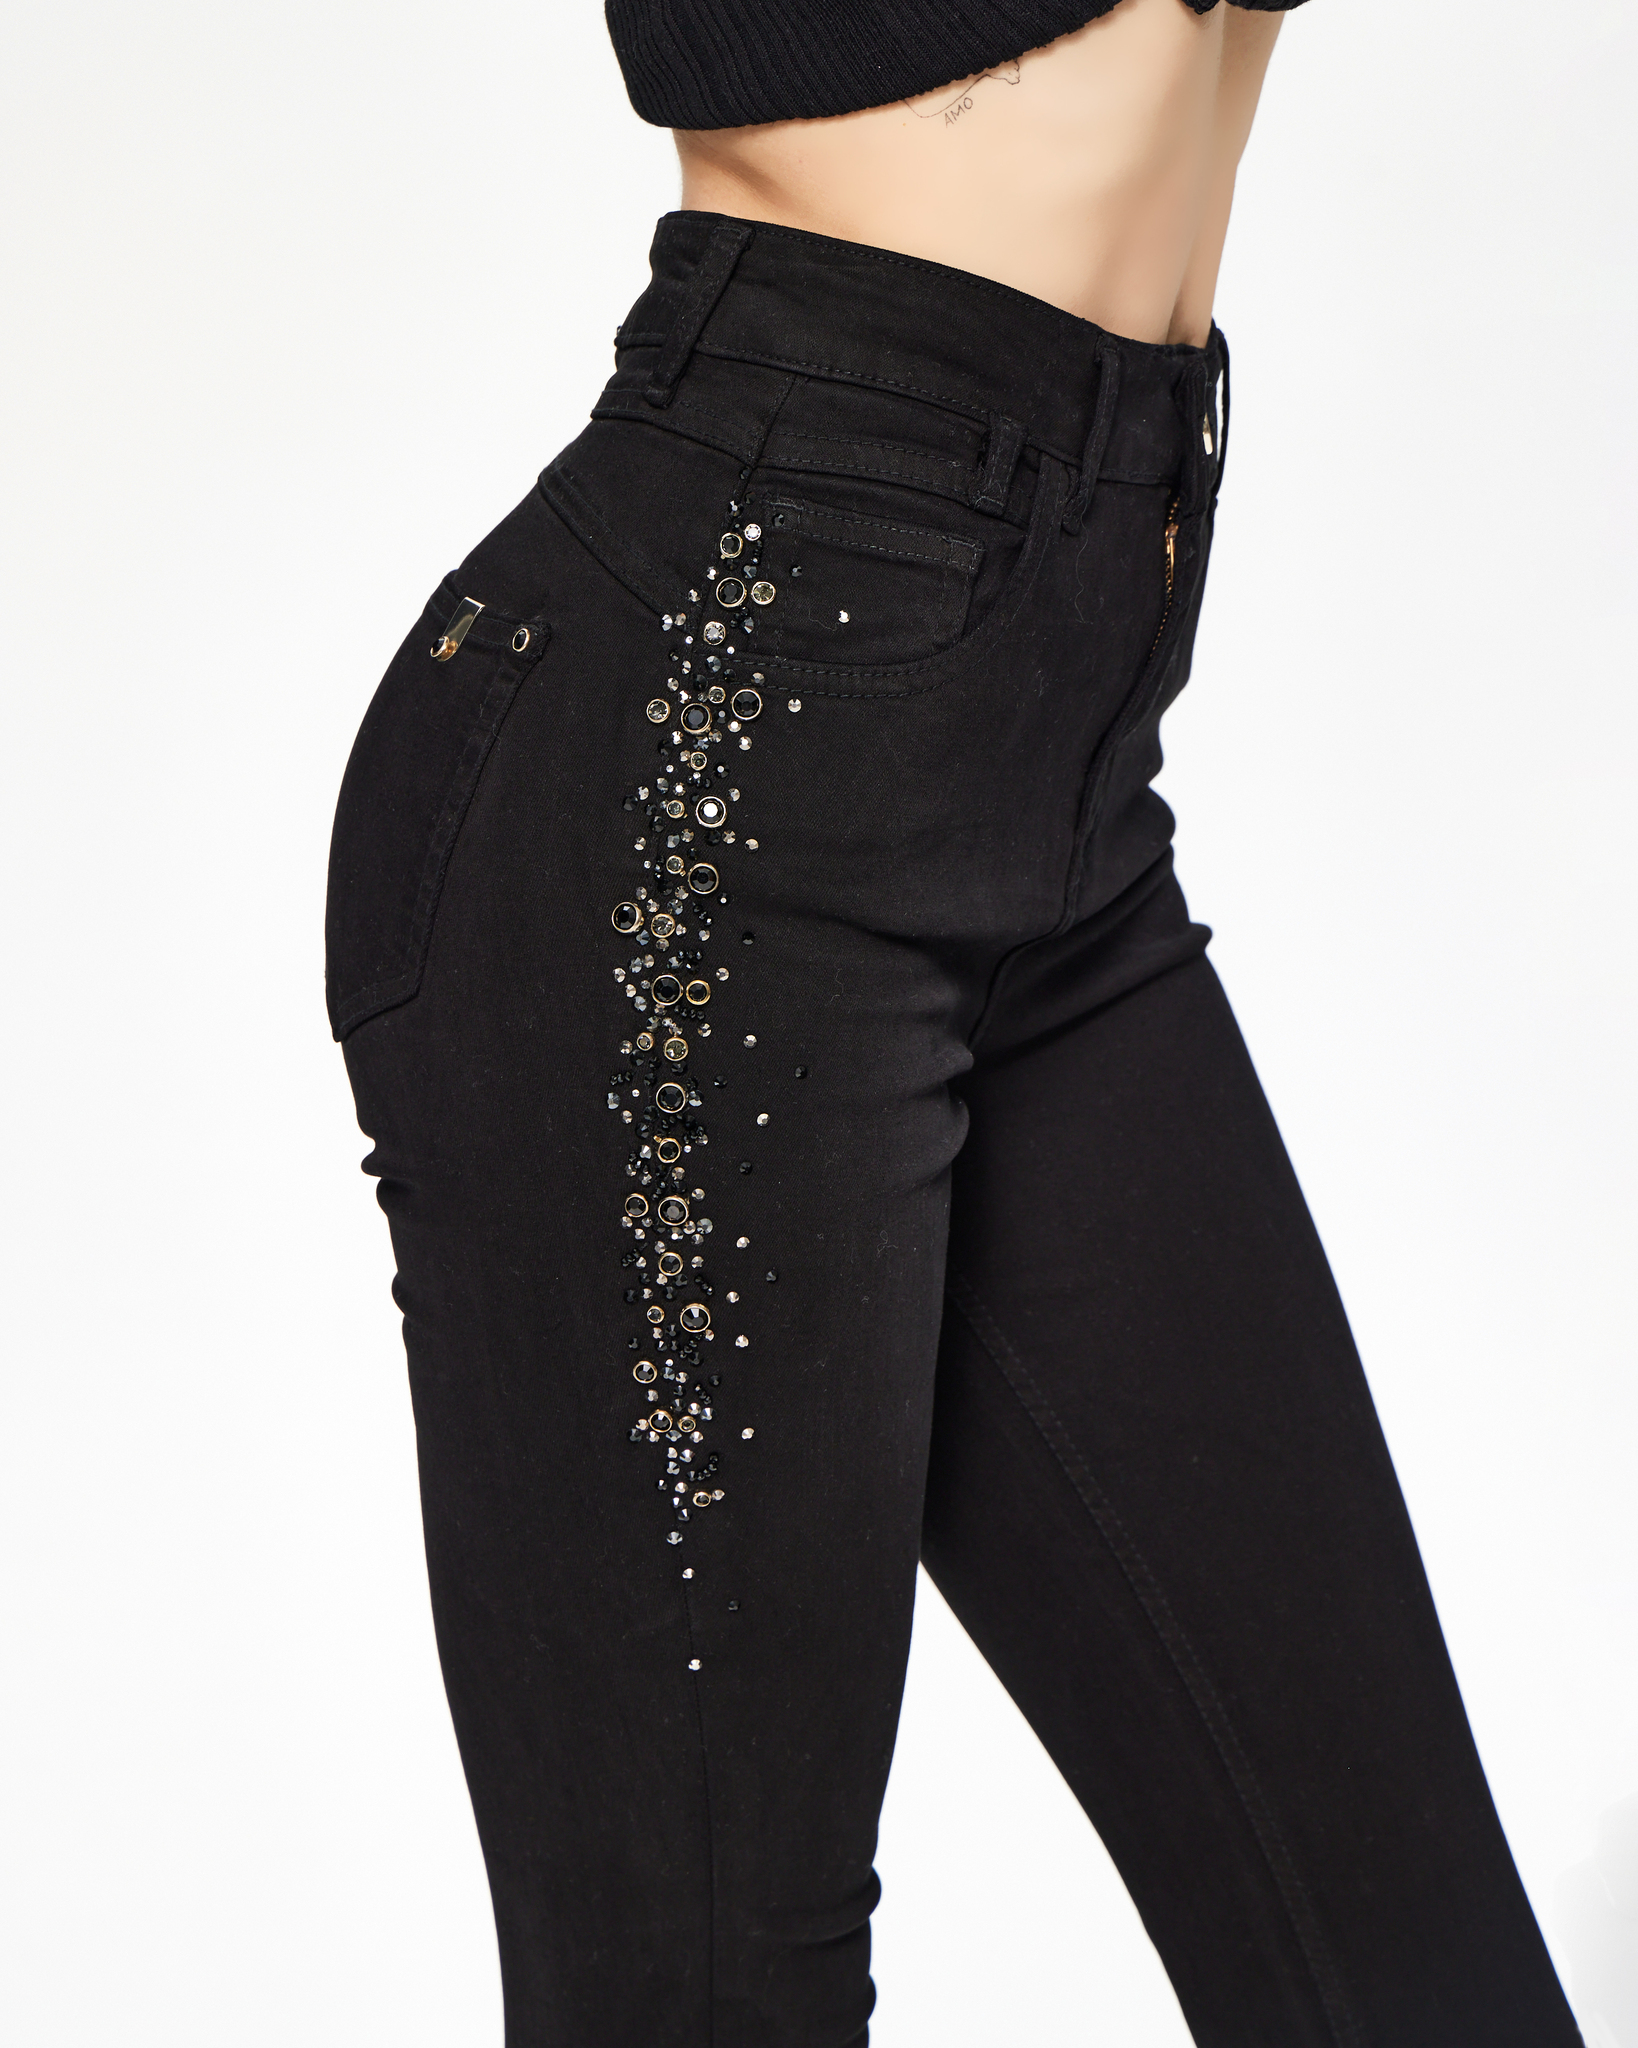 Джинсы женские: купить джинсы со стразами от грн в интернет магазине эталон62.рф